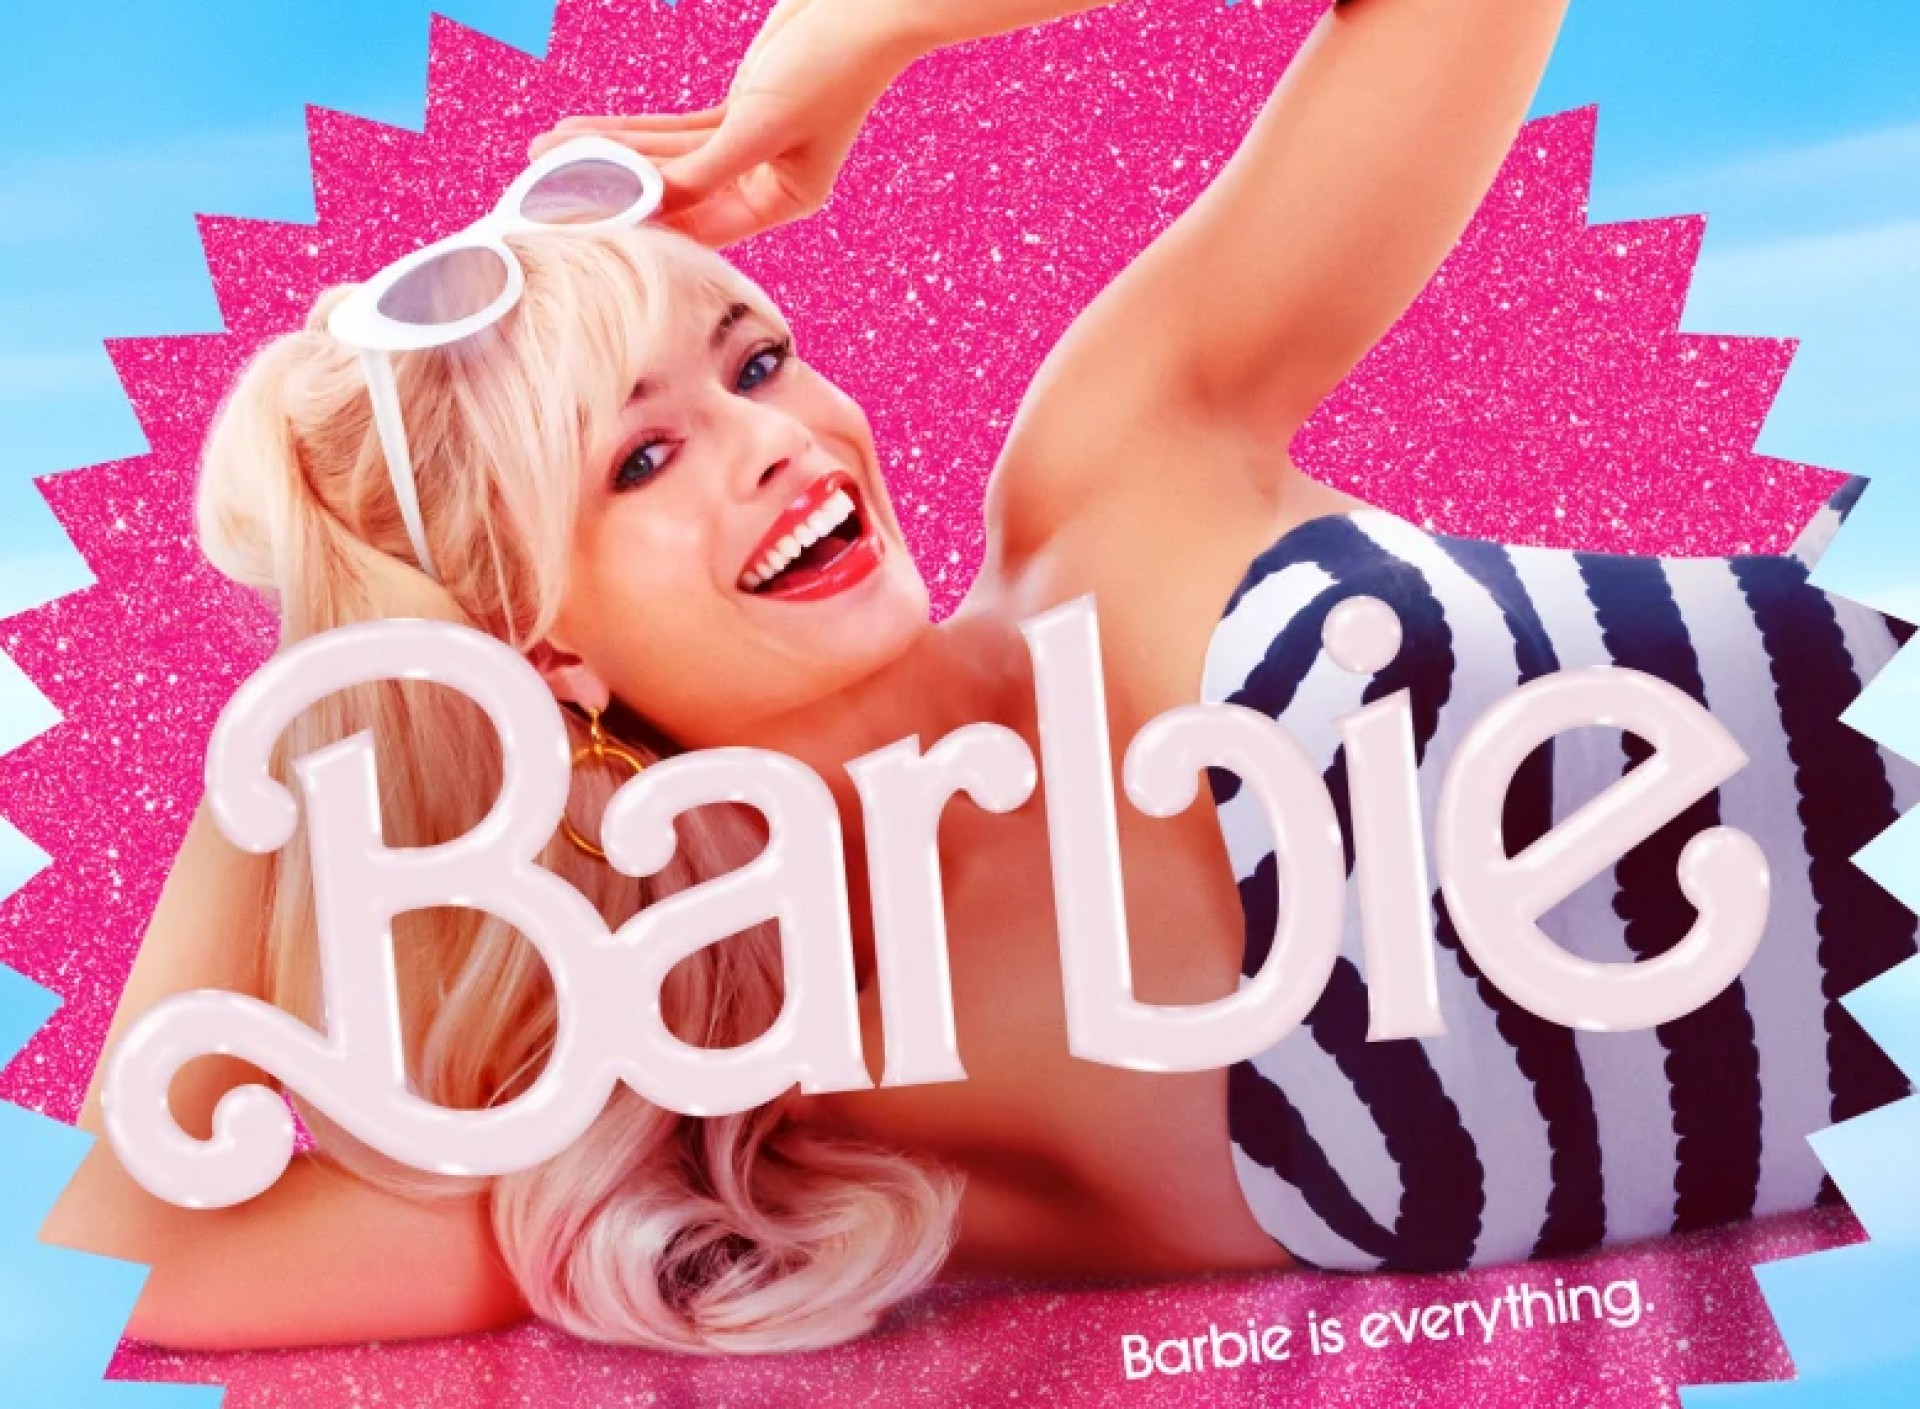 Personagem de Issa Rae no filme 'Barbie' ganha boneca oficial